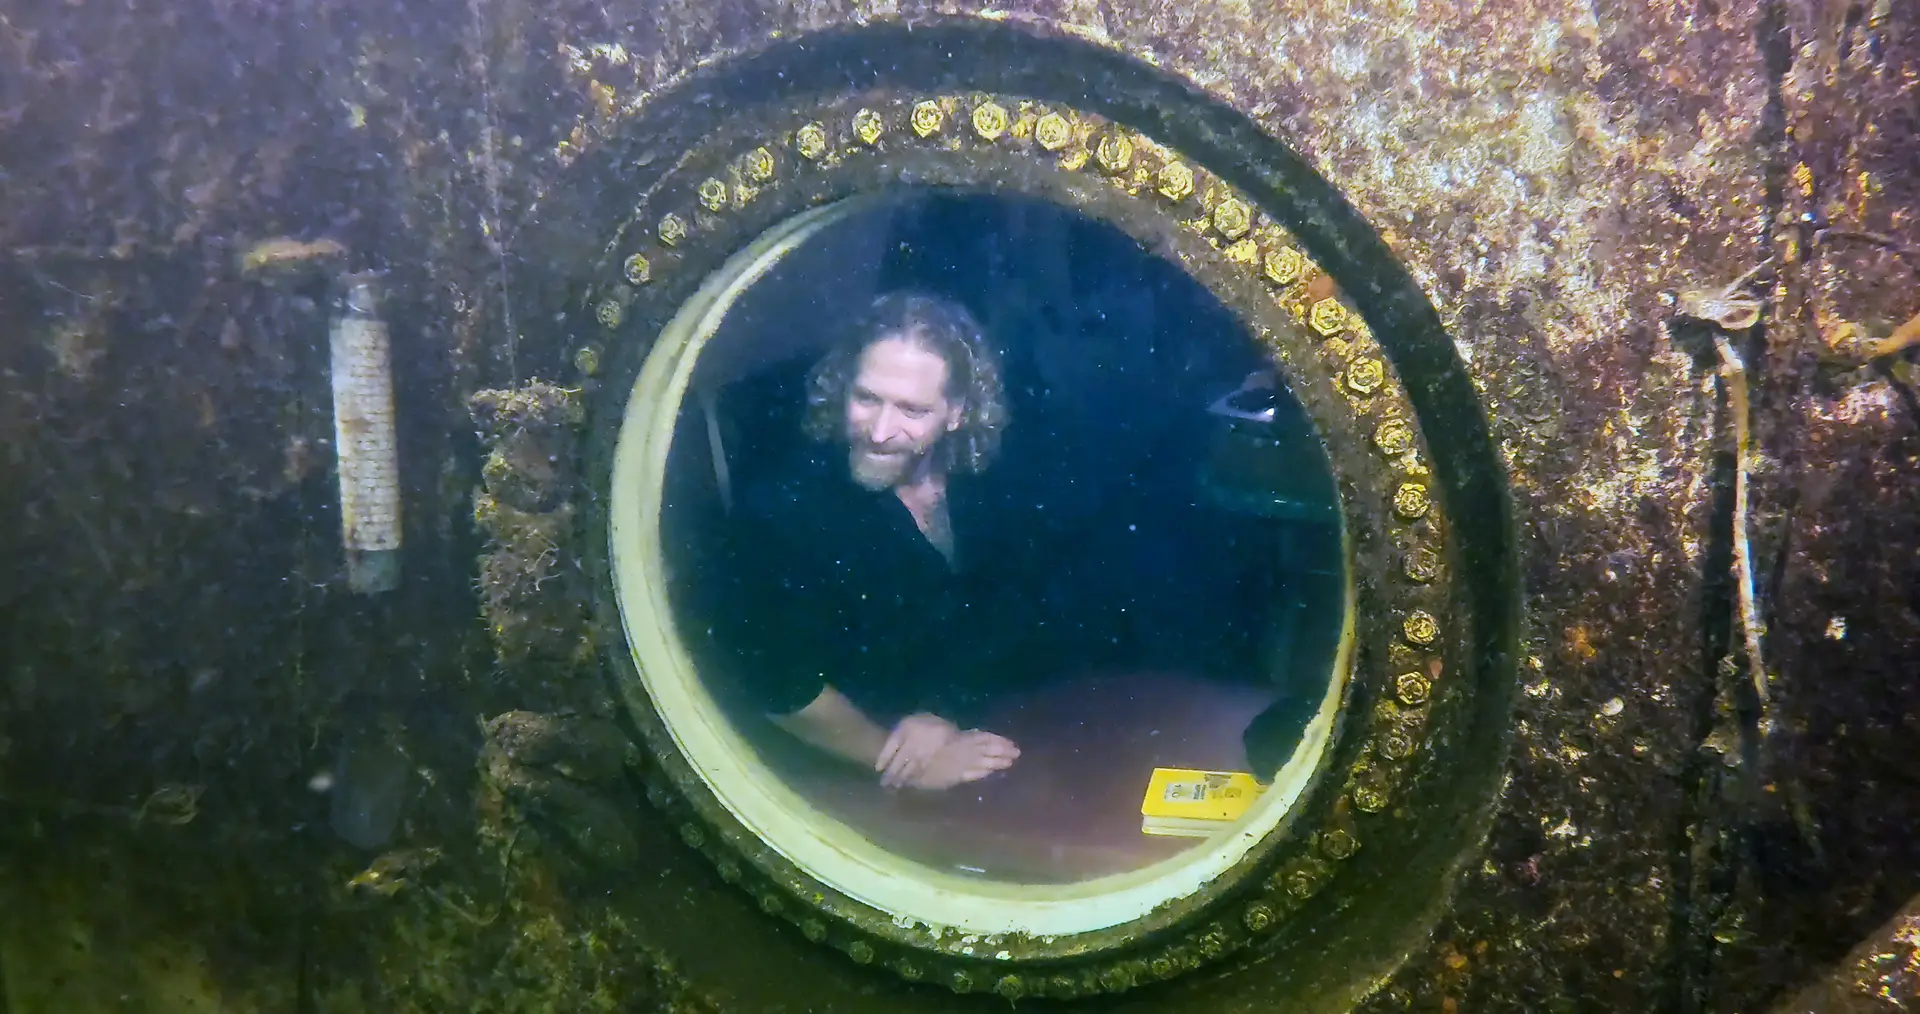 Professor universitário bate recorde ao viver 74 dias debaixo de água